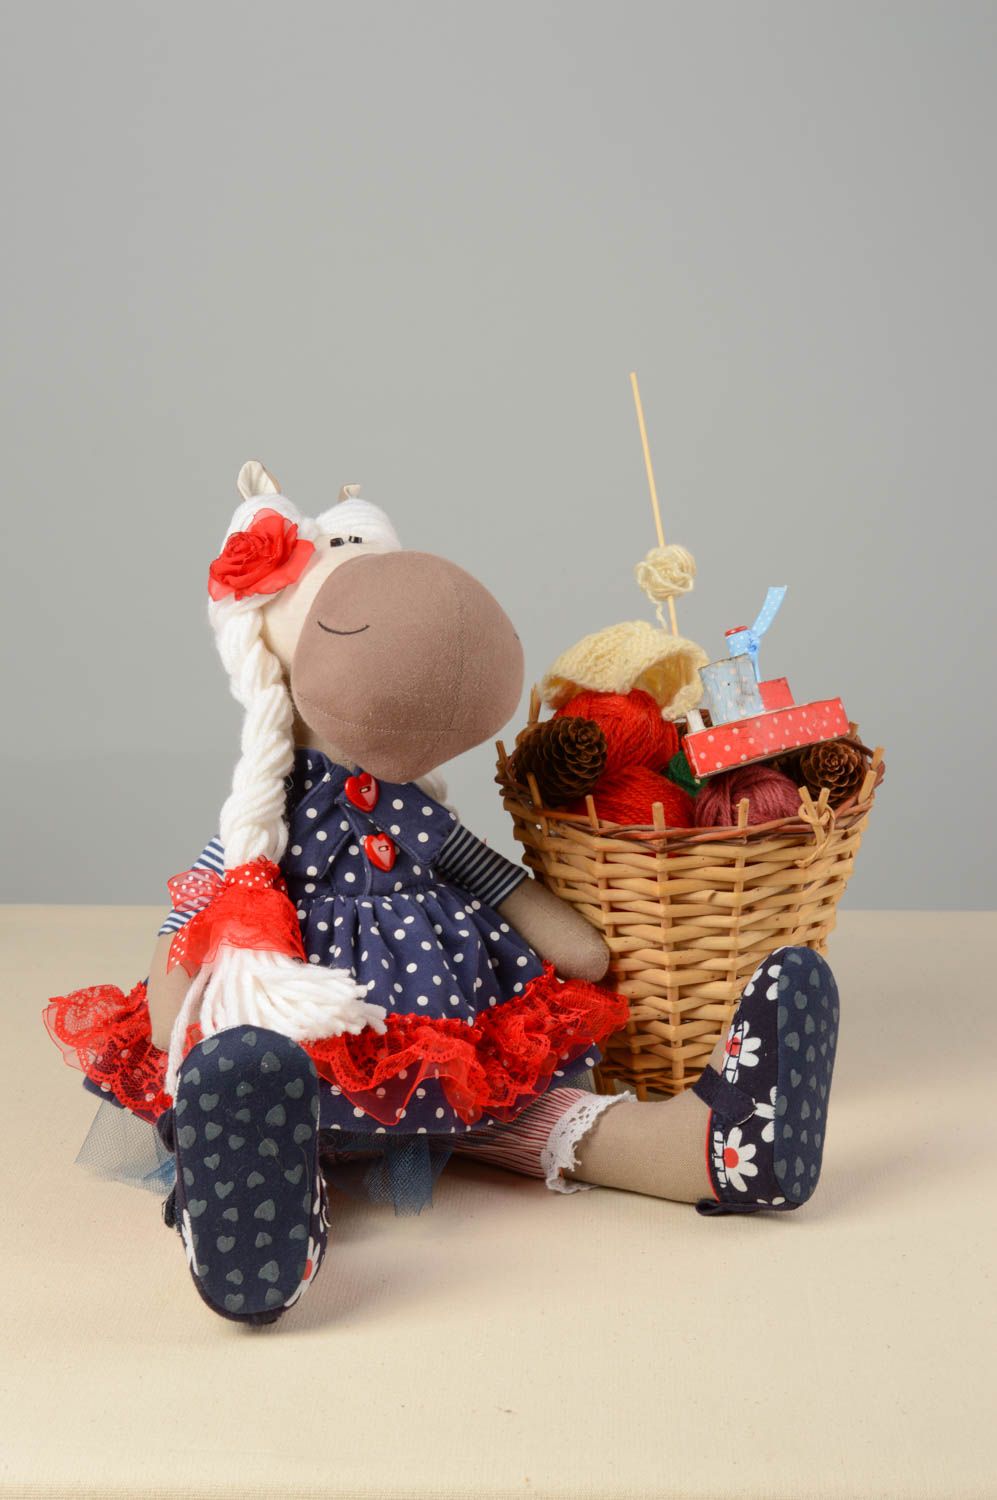 Textil Kuscheltier Pferd im Kleid grell schön modisch handmade für Kinder foto 1